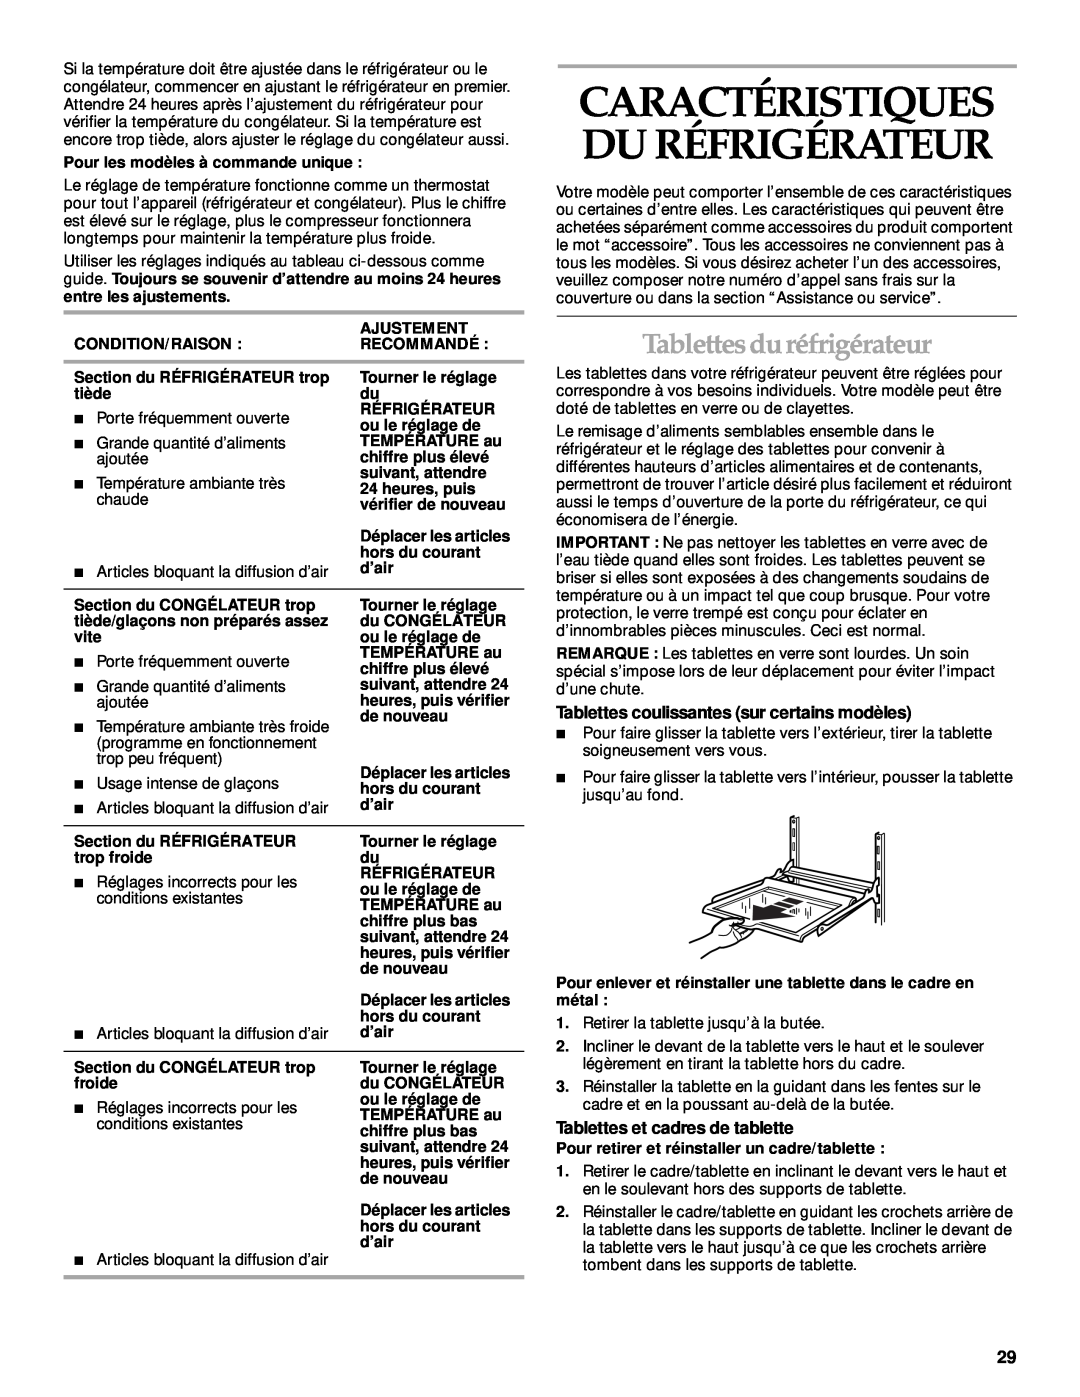 KitchenAid 2205264 manual Caractéristiques Du Réfrigérateur, Tablettesdu réfrigérateur, Tablettes et cadres de tablette 